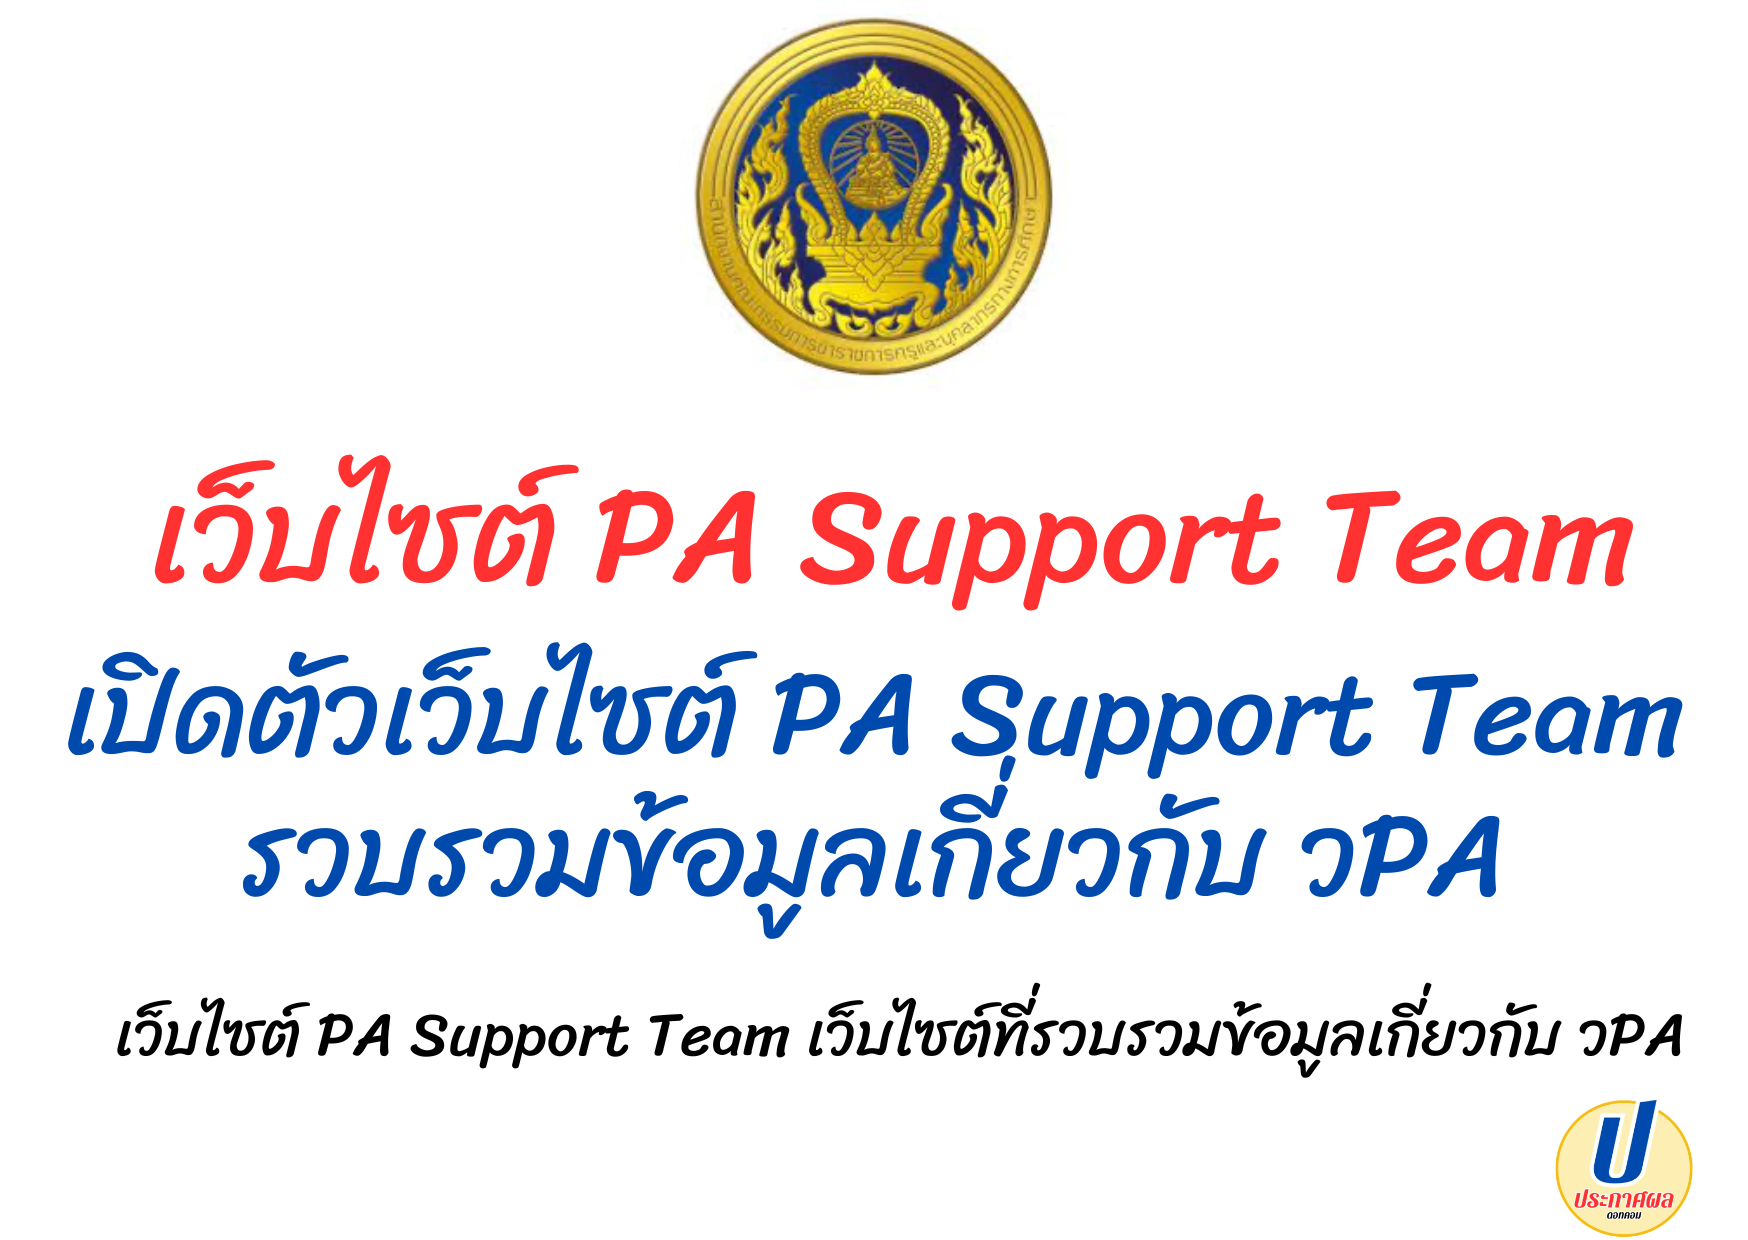 เว็ปไซต์ PA Support Team เว็ปไซต์ที่รวบรวมข้อมูลเกี่ยวกับการประเมินวิทยฐานะแนวใหม่ เปิดตัวเว็ปไซต์ PA Support Team